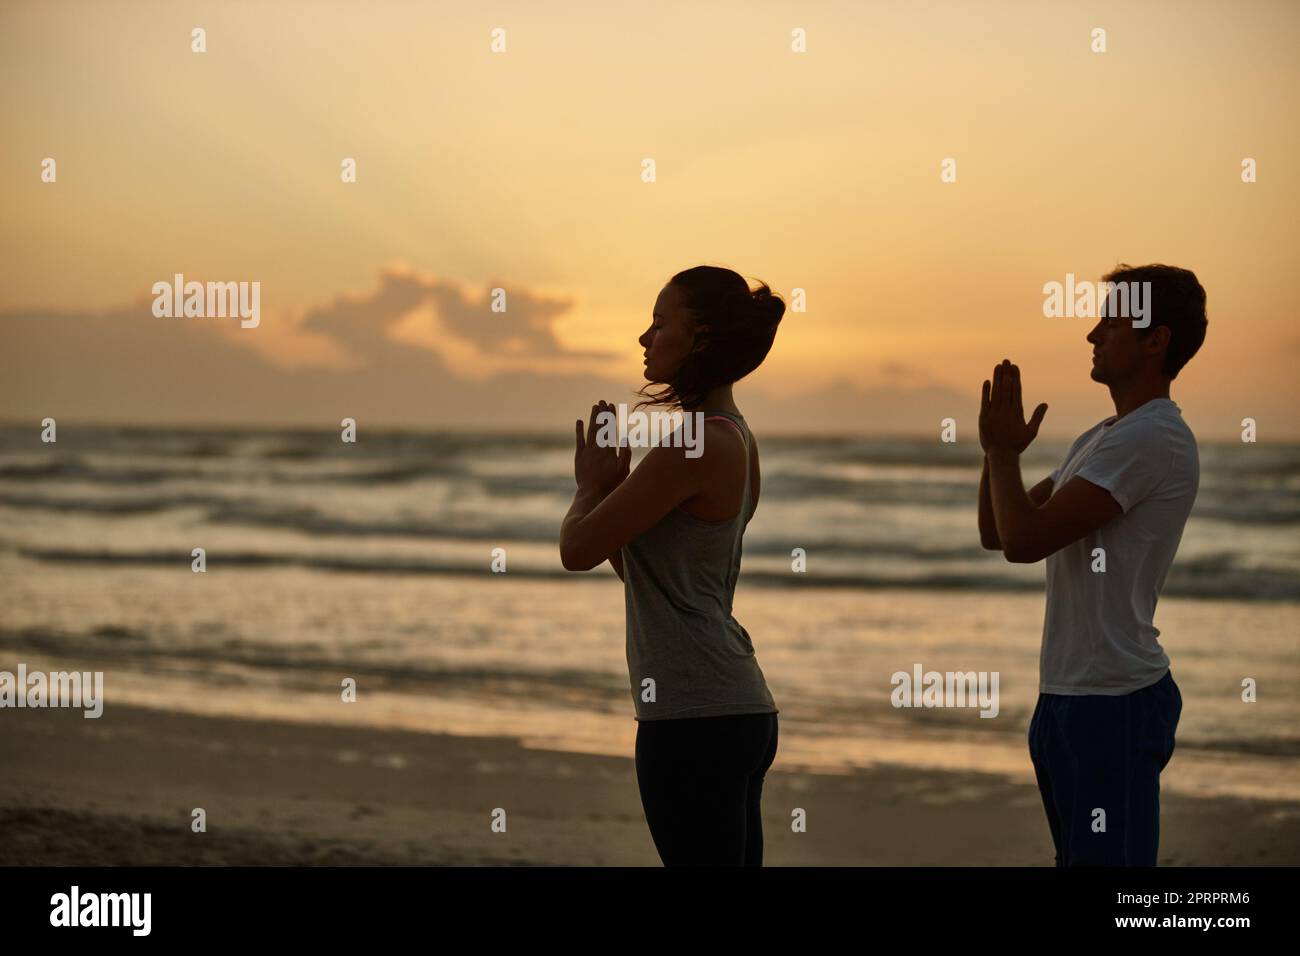 Lograr la salud y la felicidad a través del yoga. Una pareja haciendo yoga en la playa al atardecer. Foto de stock